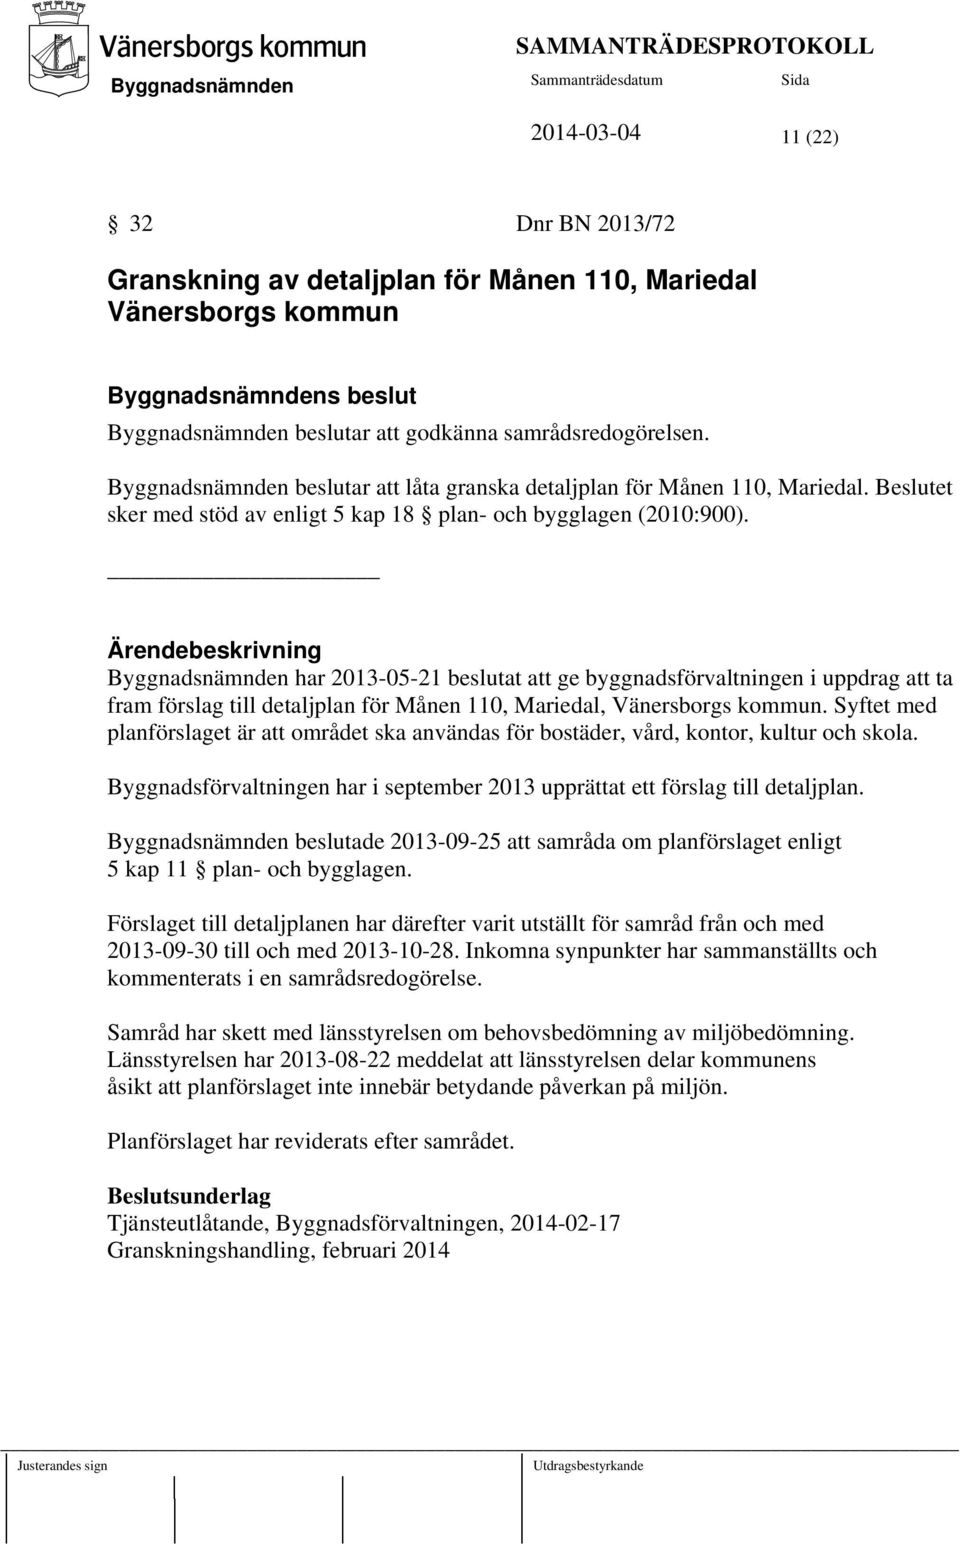 har 2013-05-21 beslutat att ge byggnadsförvaltningen i uppdrag att ta fram förslag till detaljplan för Månen 110, Mariedal, Vänersborgs kommun.